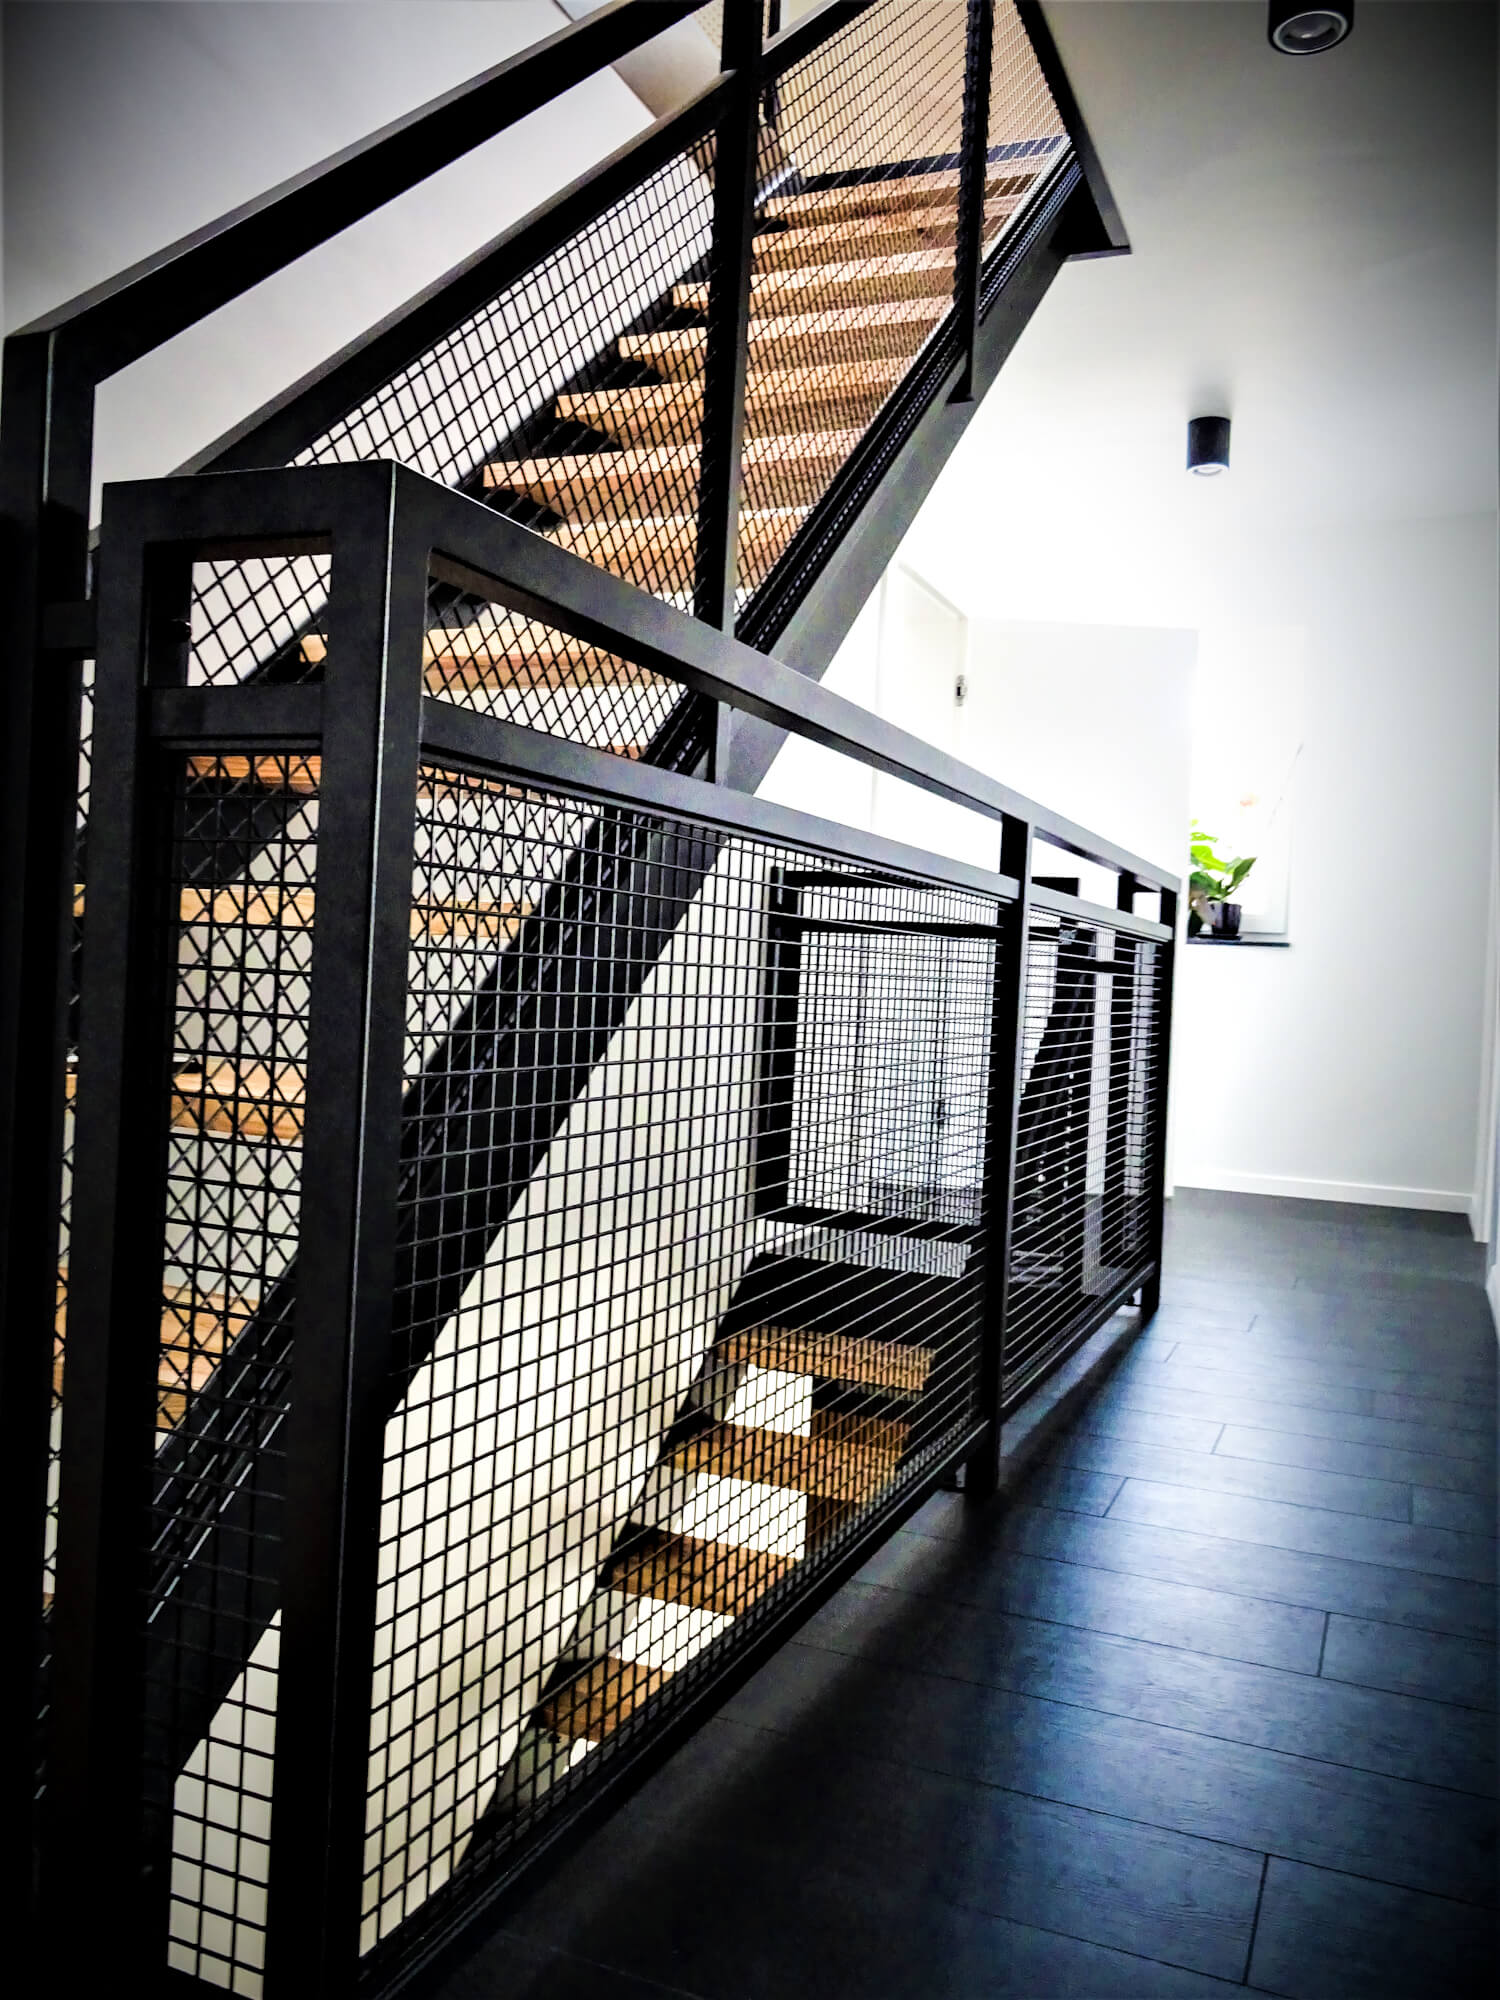 Dwa komplety schodów opartych o konstrukcję z policzków stalowych lakierowanych proszkowo.
Balustra...